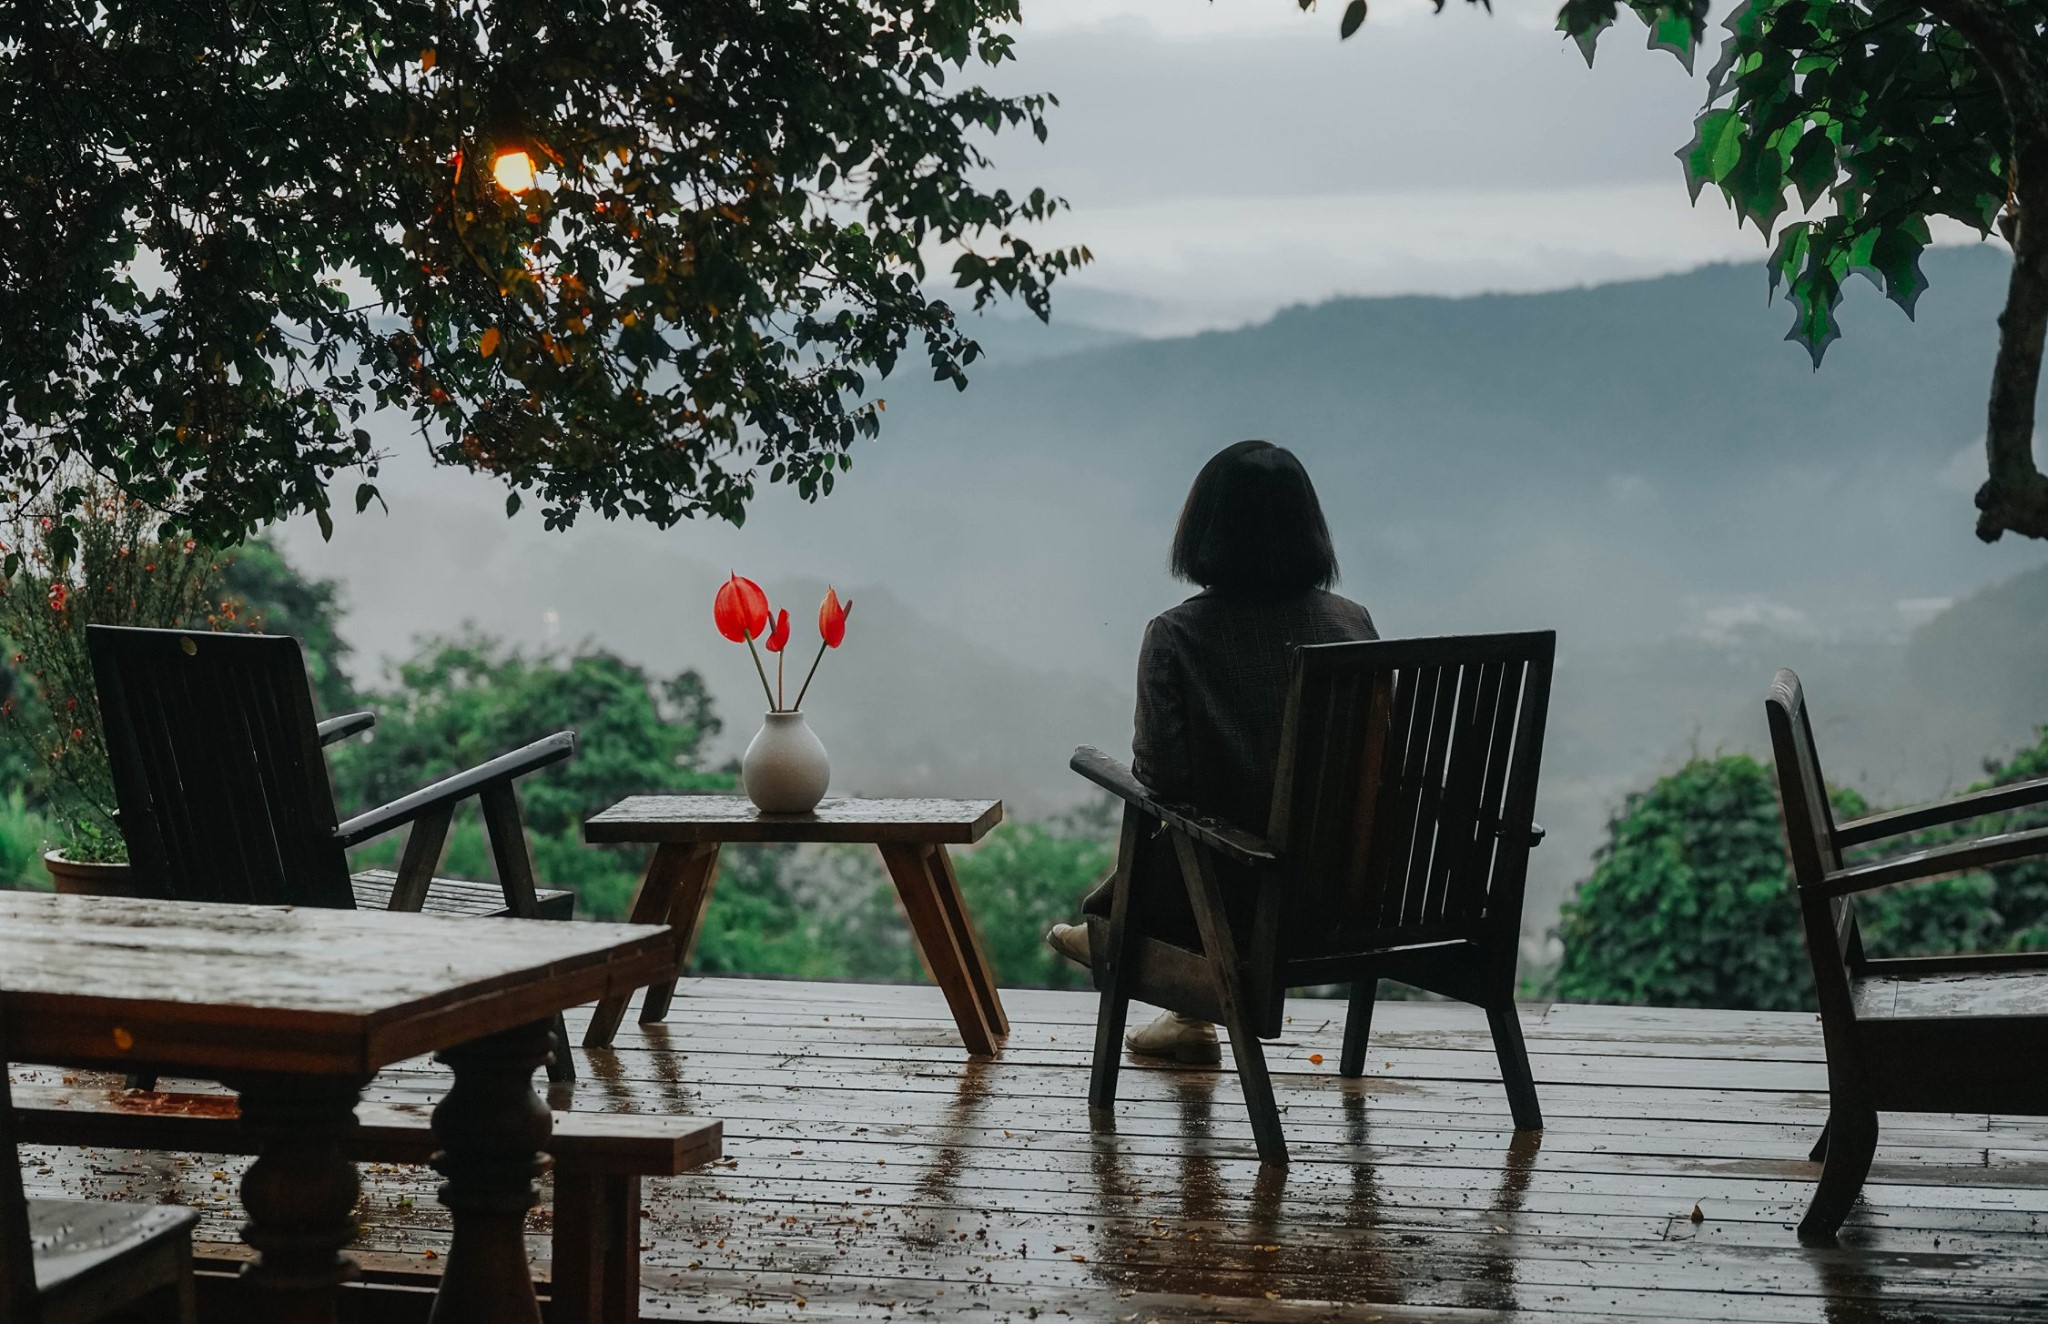 Các bạn cần mang theo ô hoặc áo mưa bởi Đà Lạt - Lâm Đồng có thể mưa vào bất kỳ thời điểm nào trong ngày.